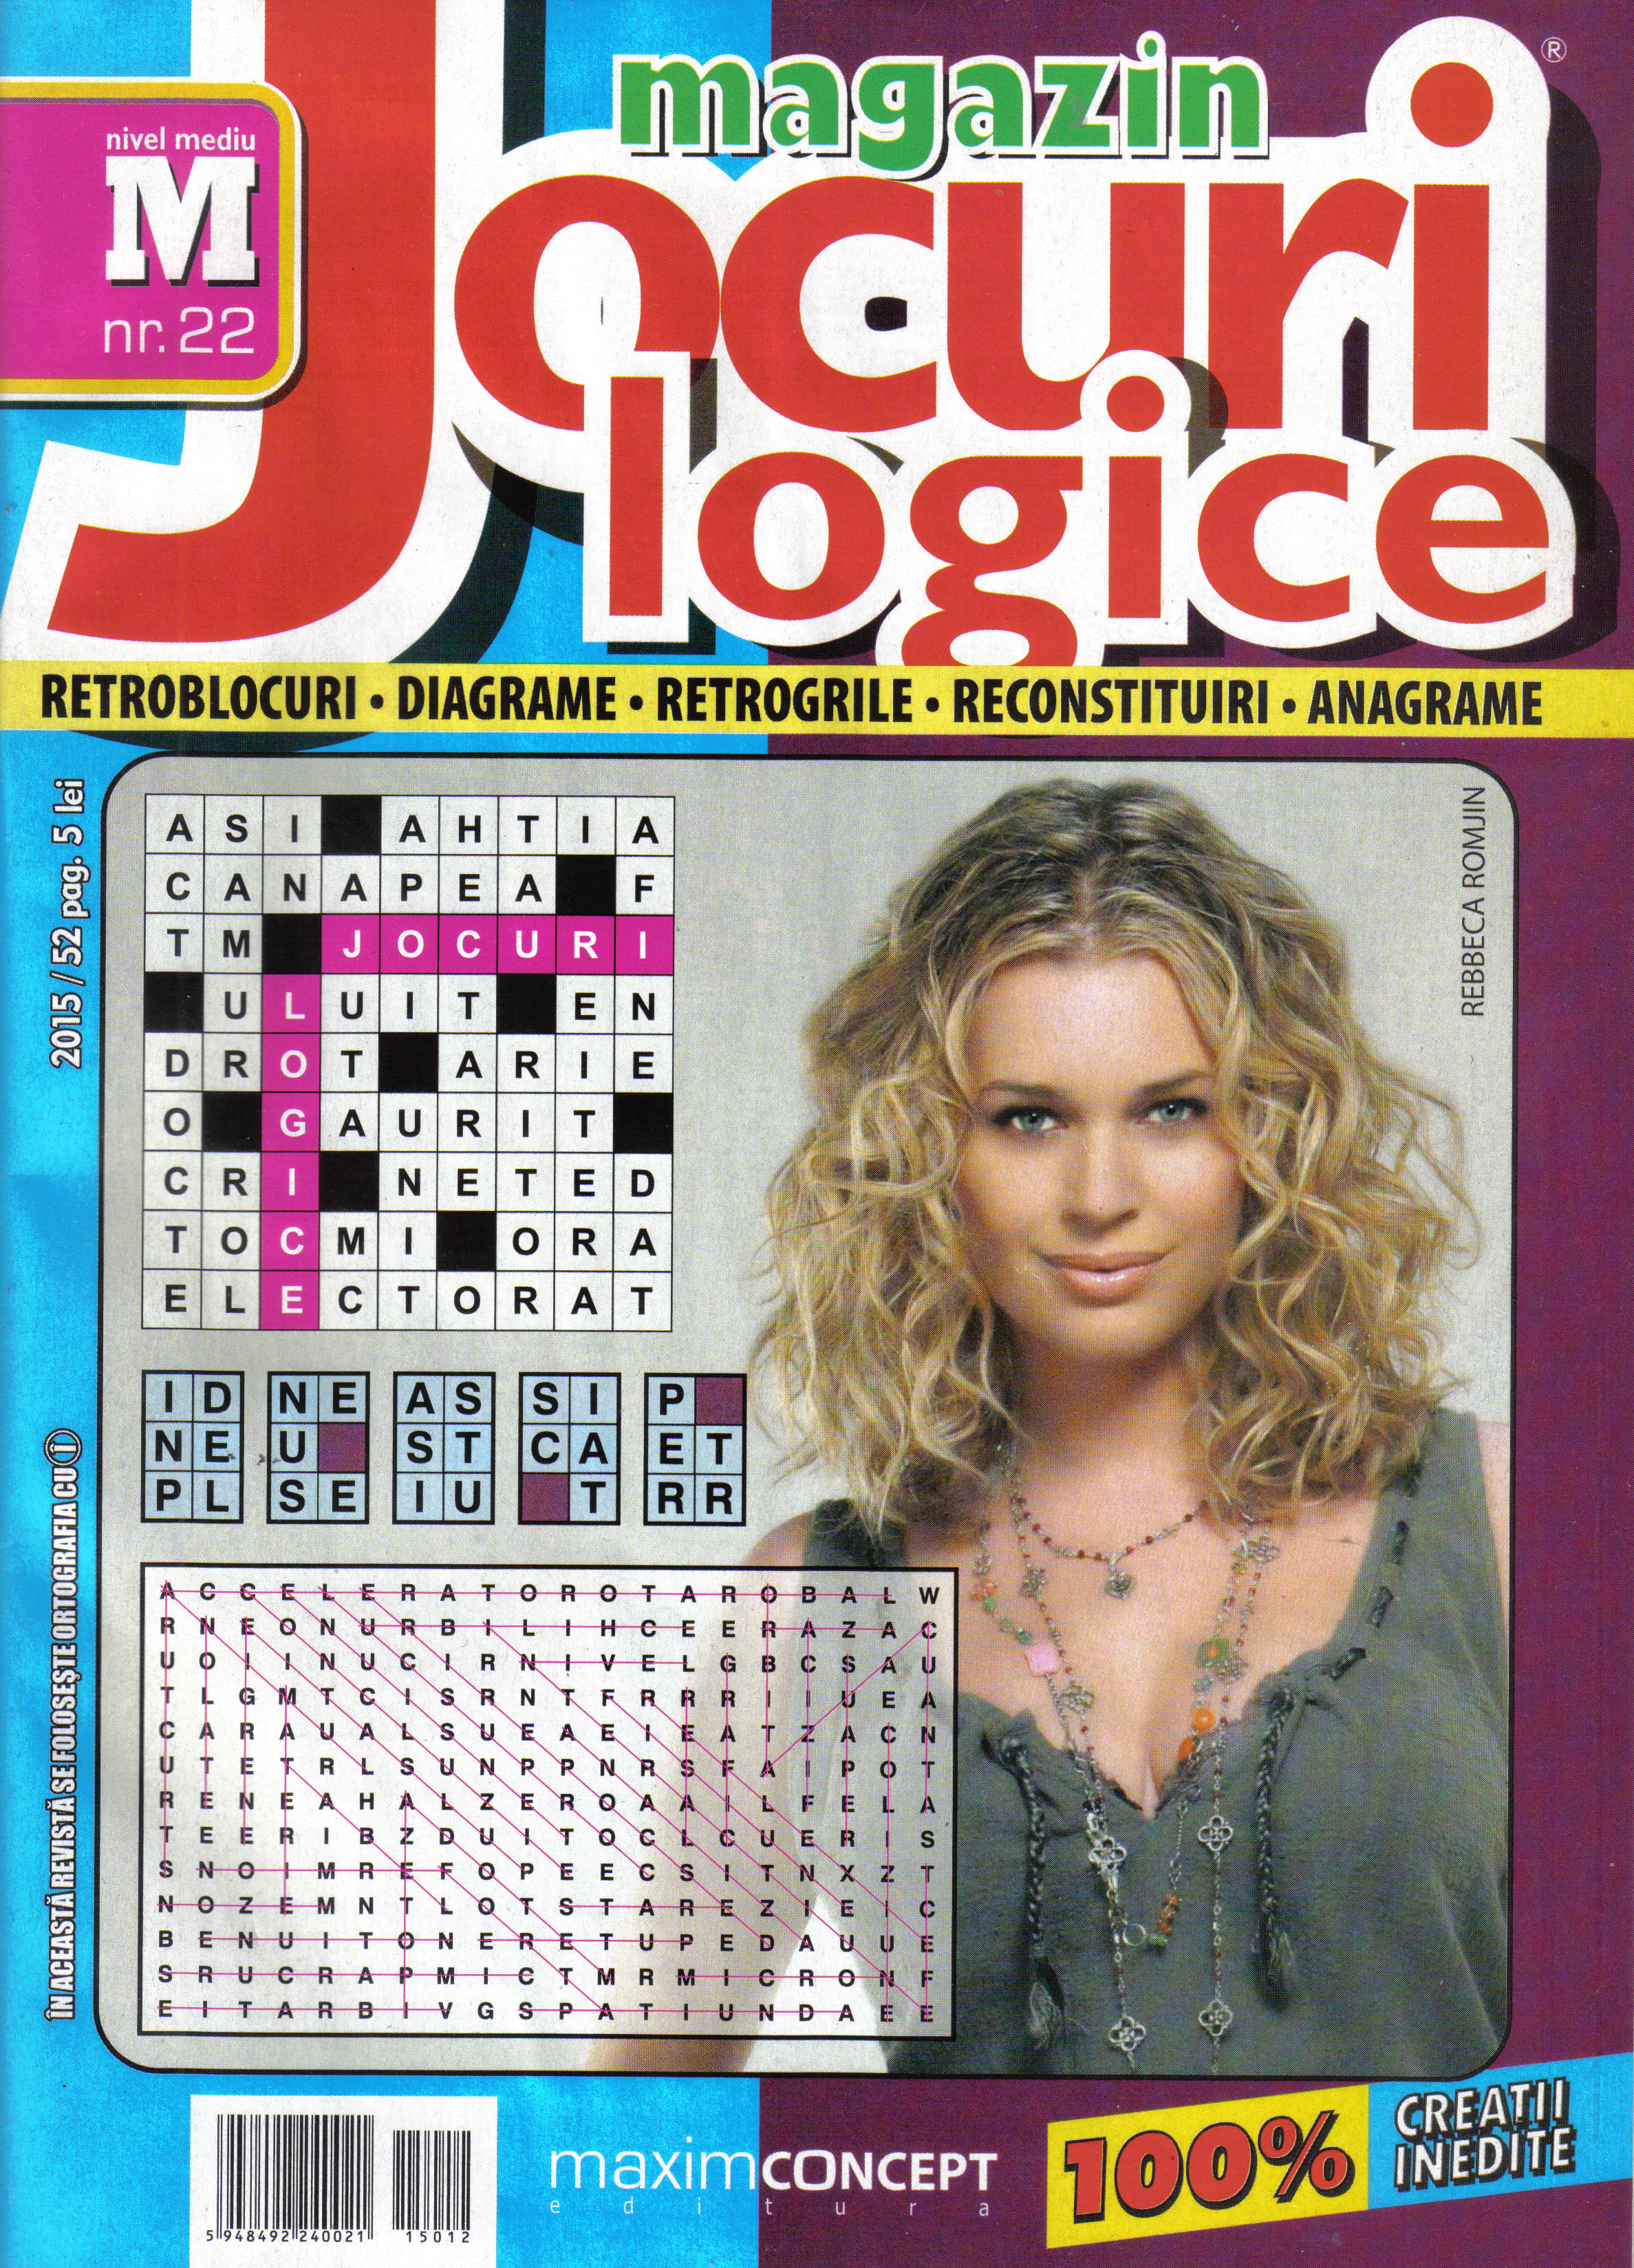 Magazin Jocuri logice, decembrie 2015